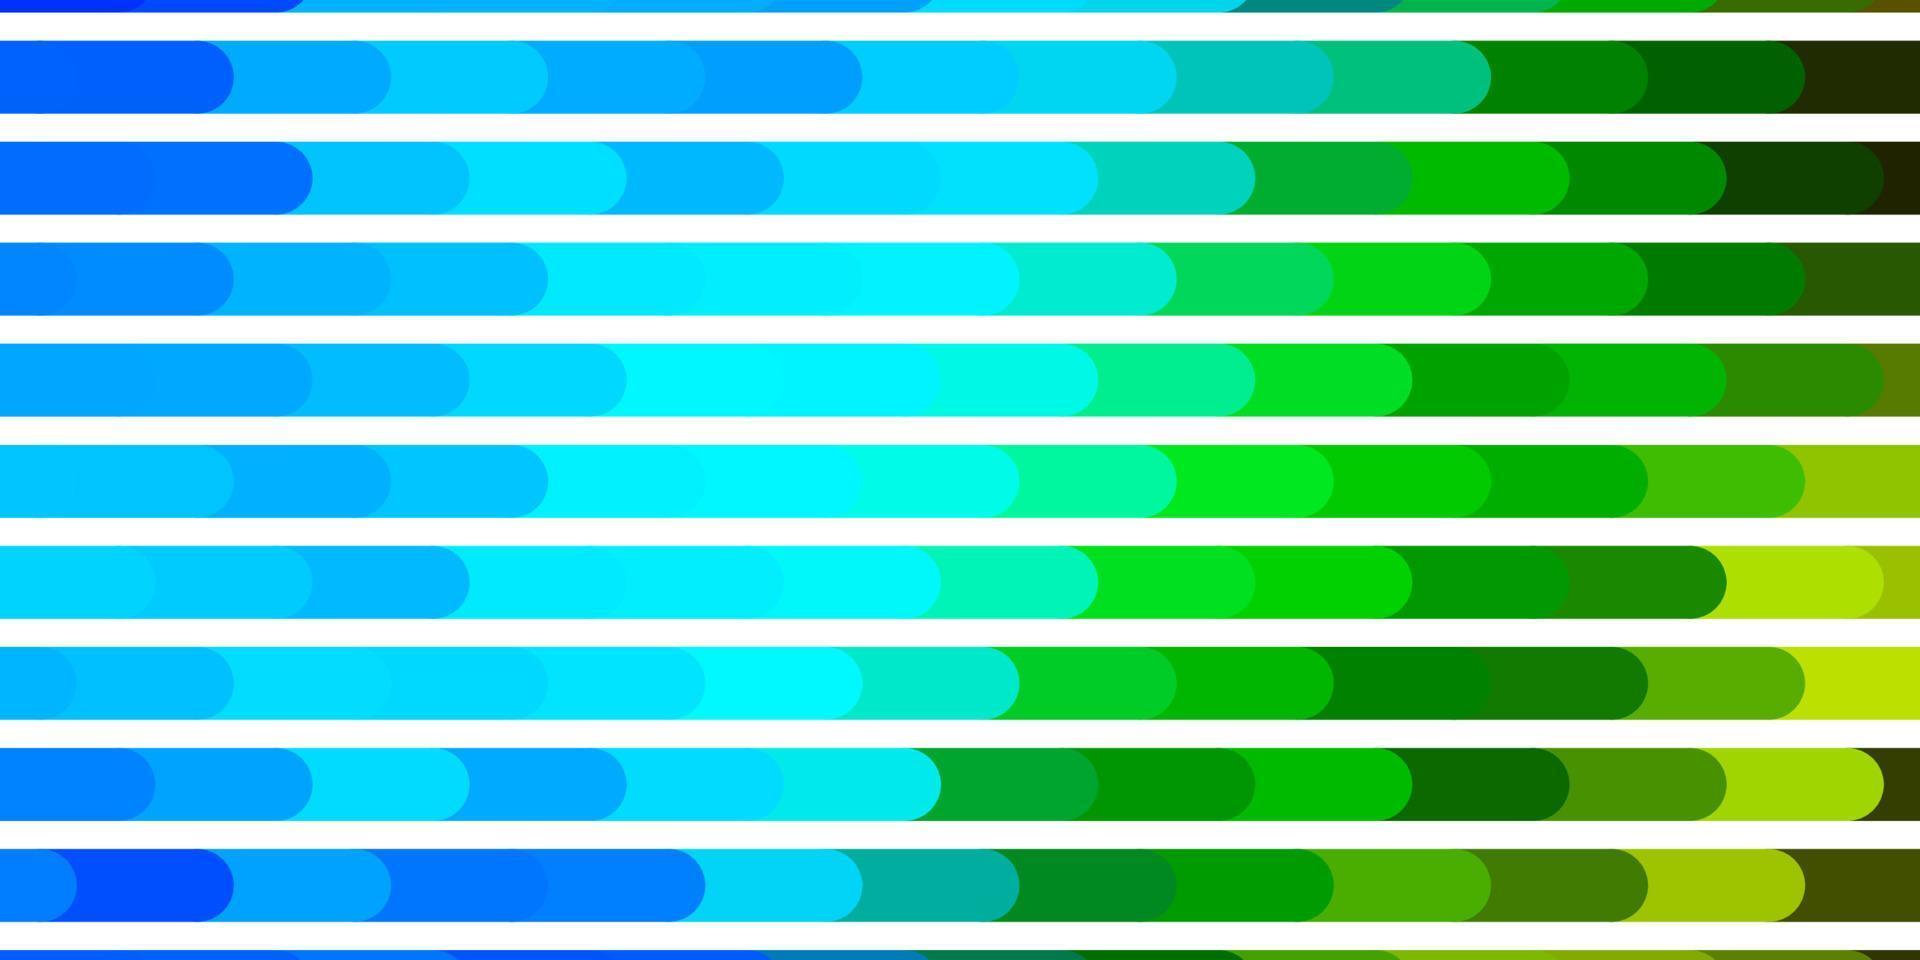 lichtblauwe, groene vectorachtergrond met lijnen. vector